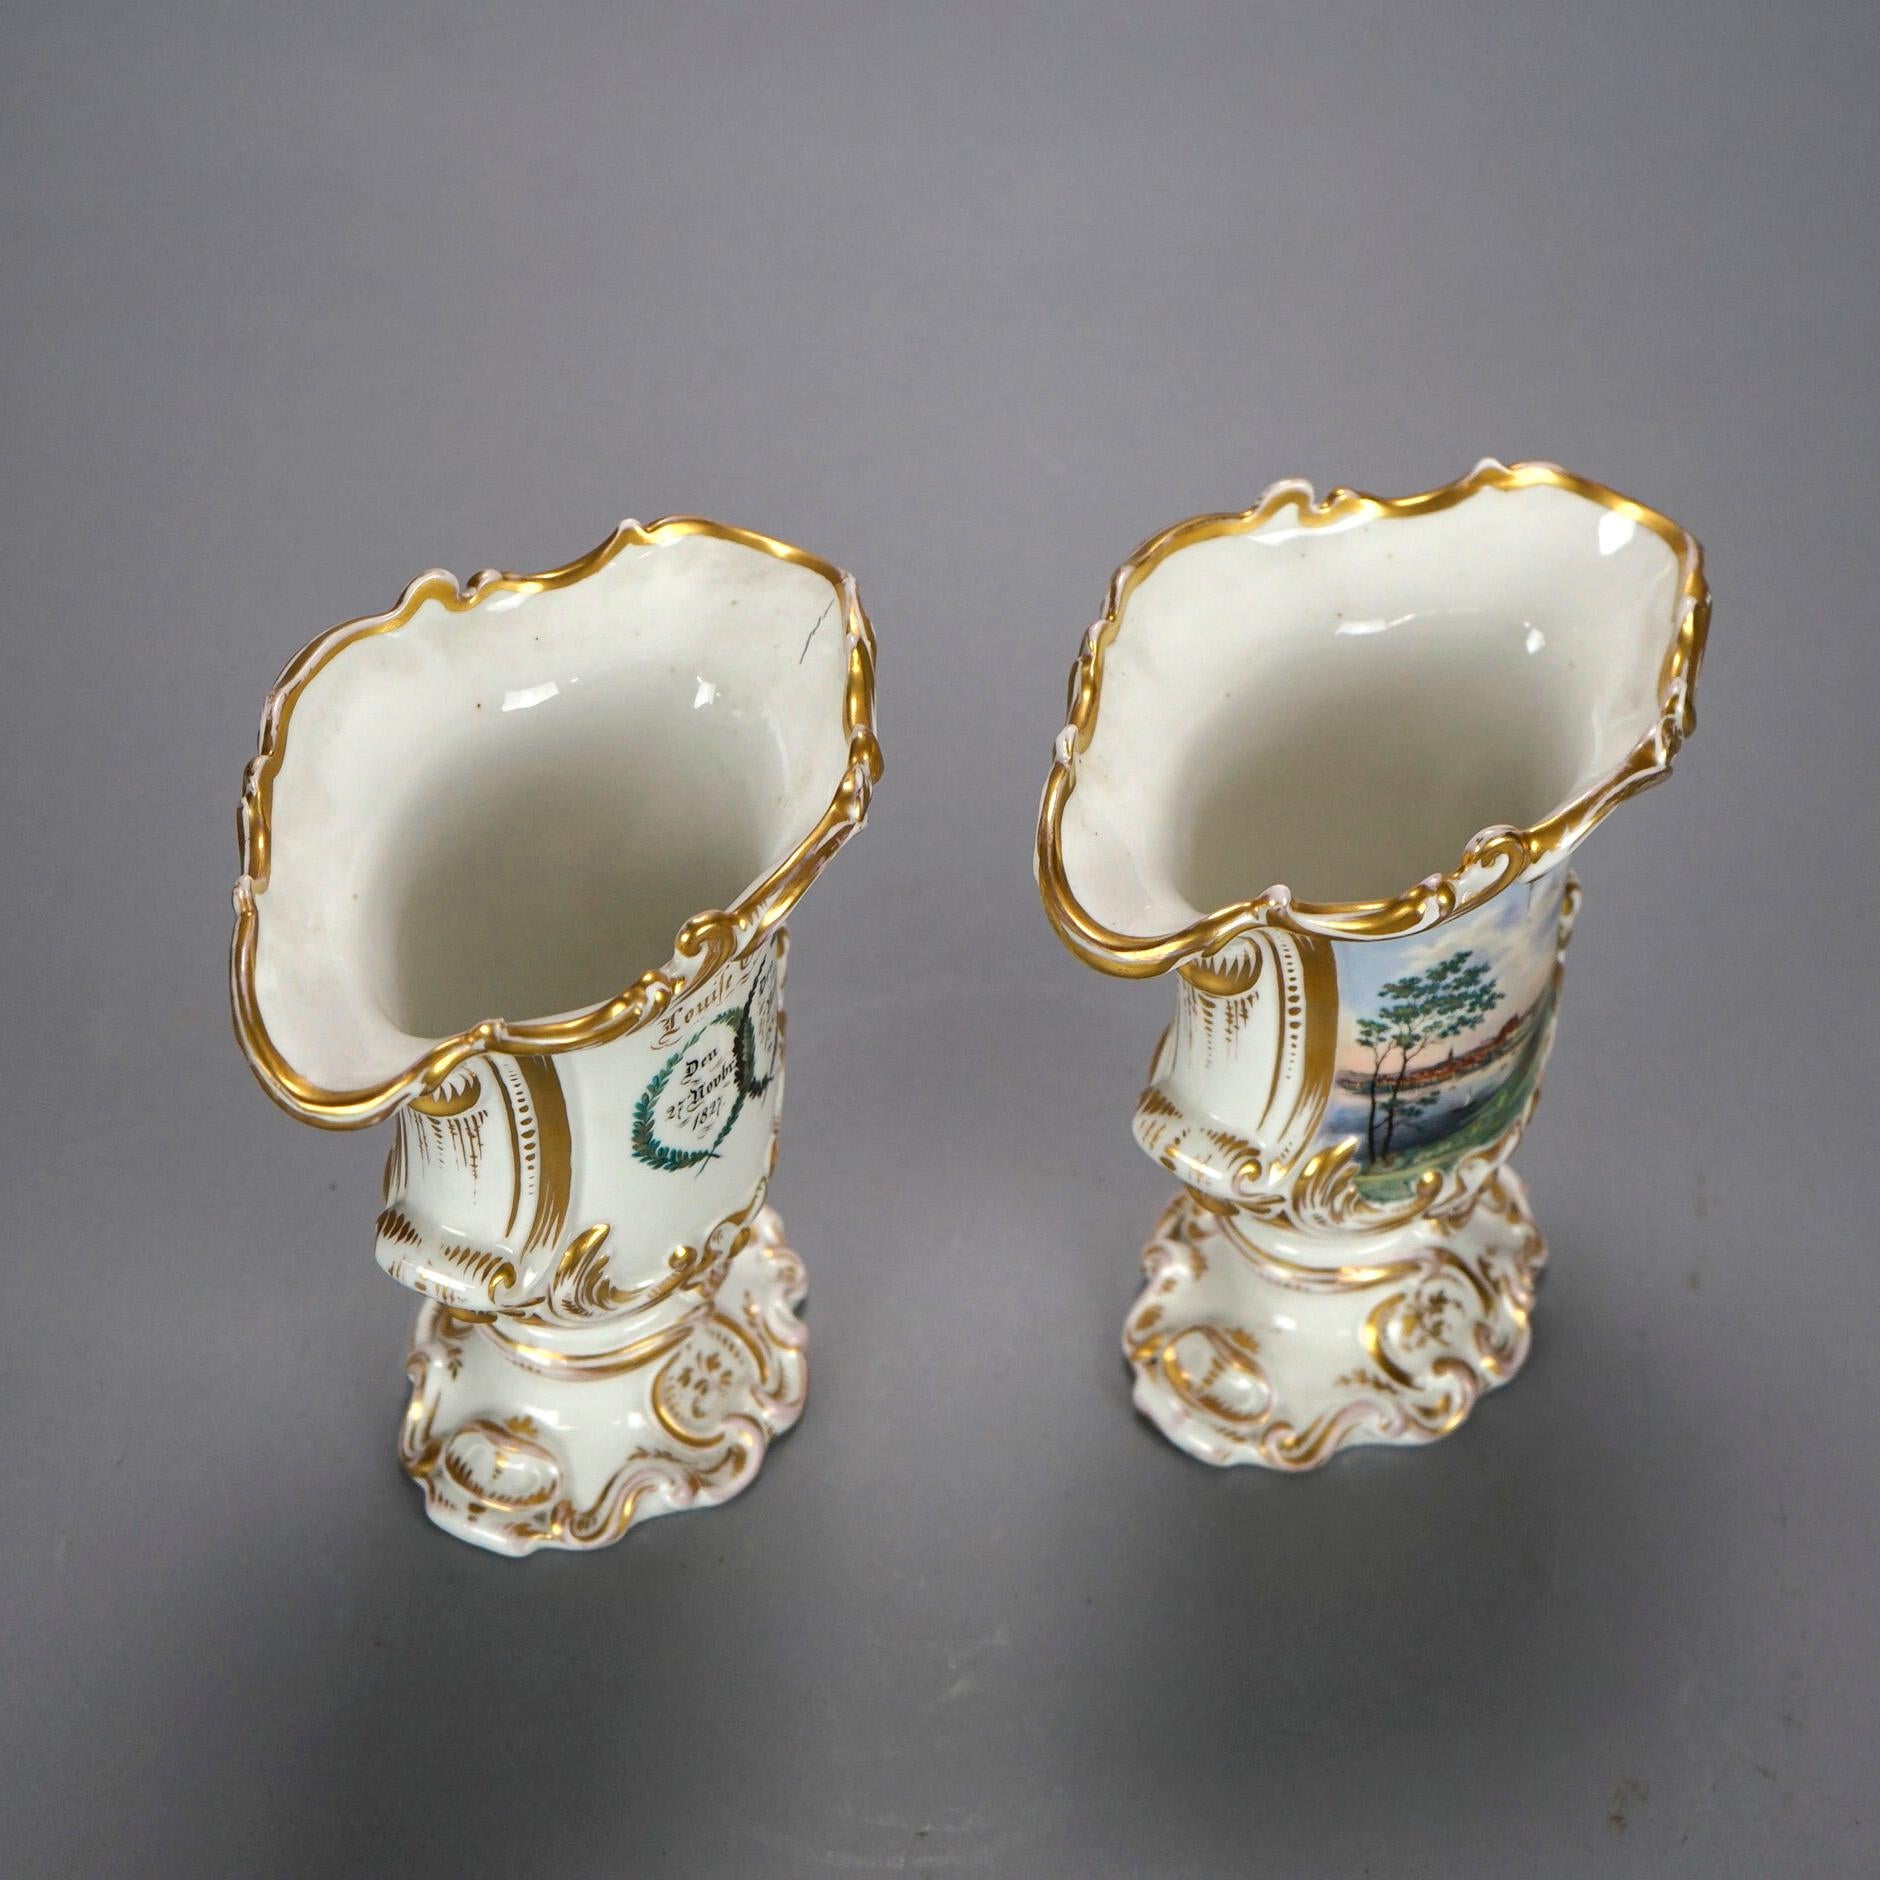 Paire de vases allemands anciens en porcelaine avec un pied, une lèvre en forme de volute sur des réserves peintes à la main, des reflets dorés sur l'ensemble, le cachet du fabricant à l'intérieur de la base, comme sur la photo, 19e